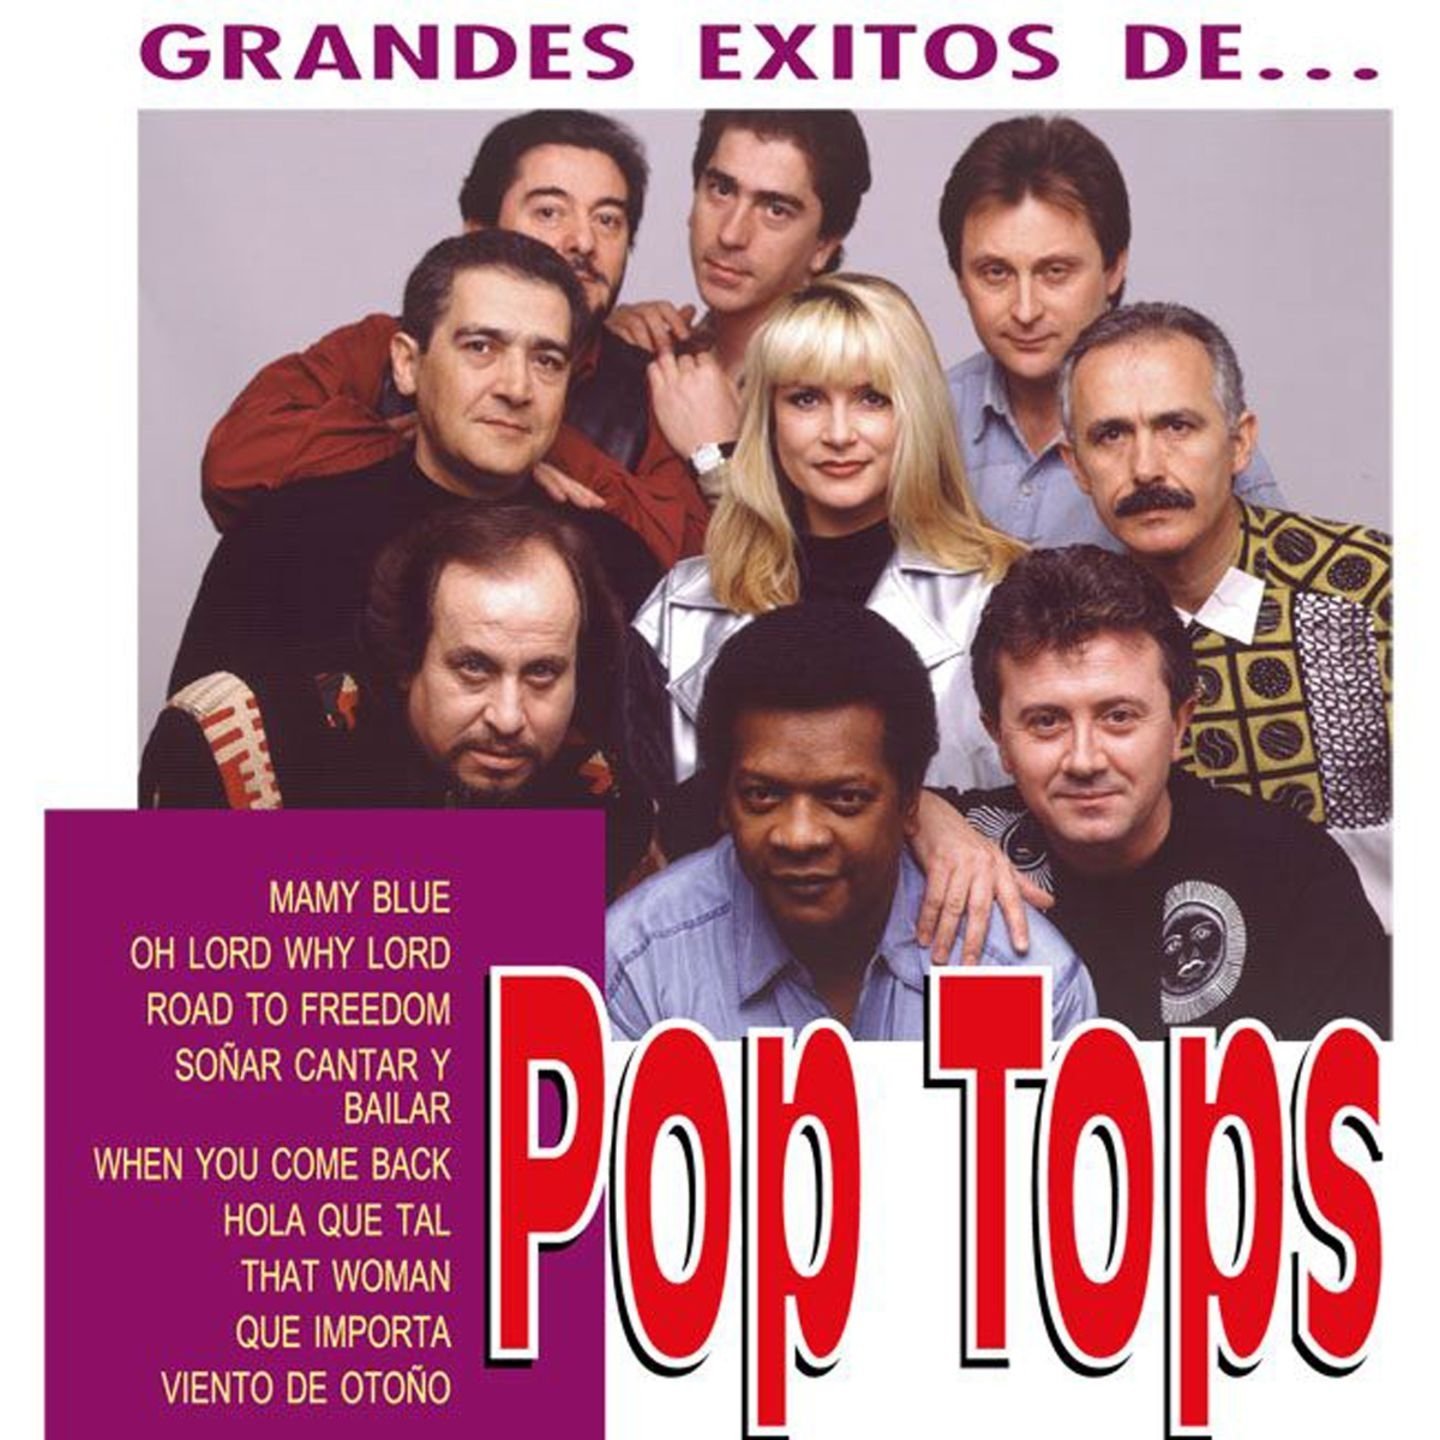 Los Grandes Exitos de Pop Tops — Pop Tops | Last.fm